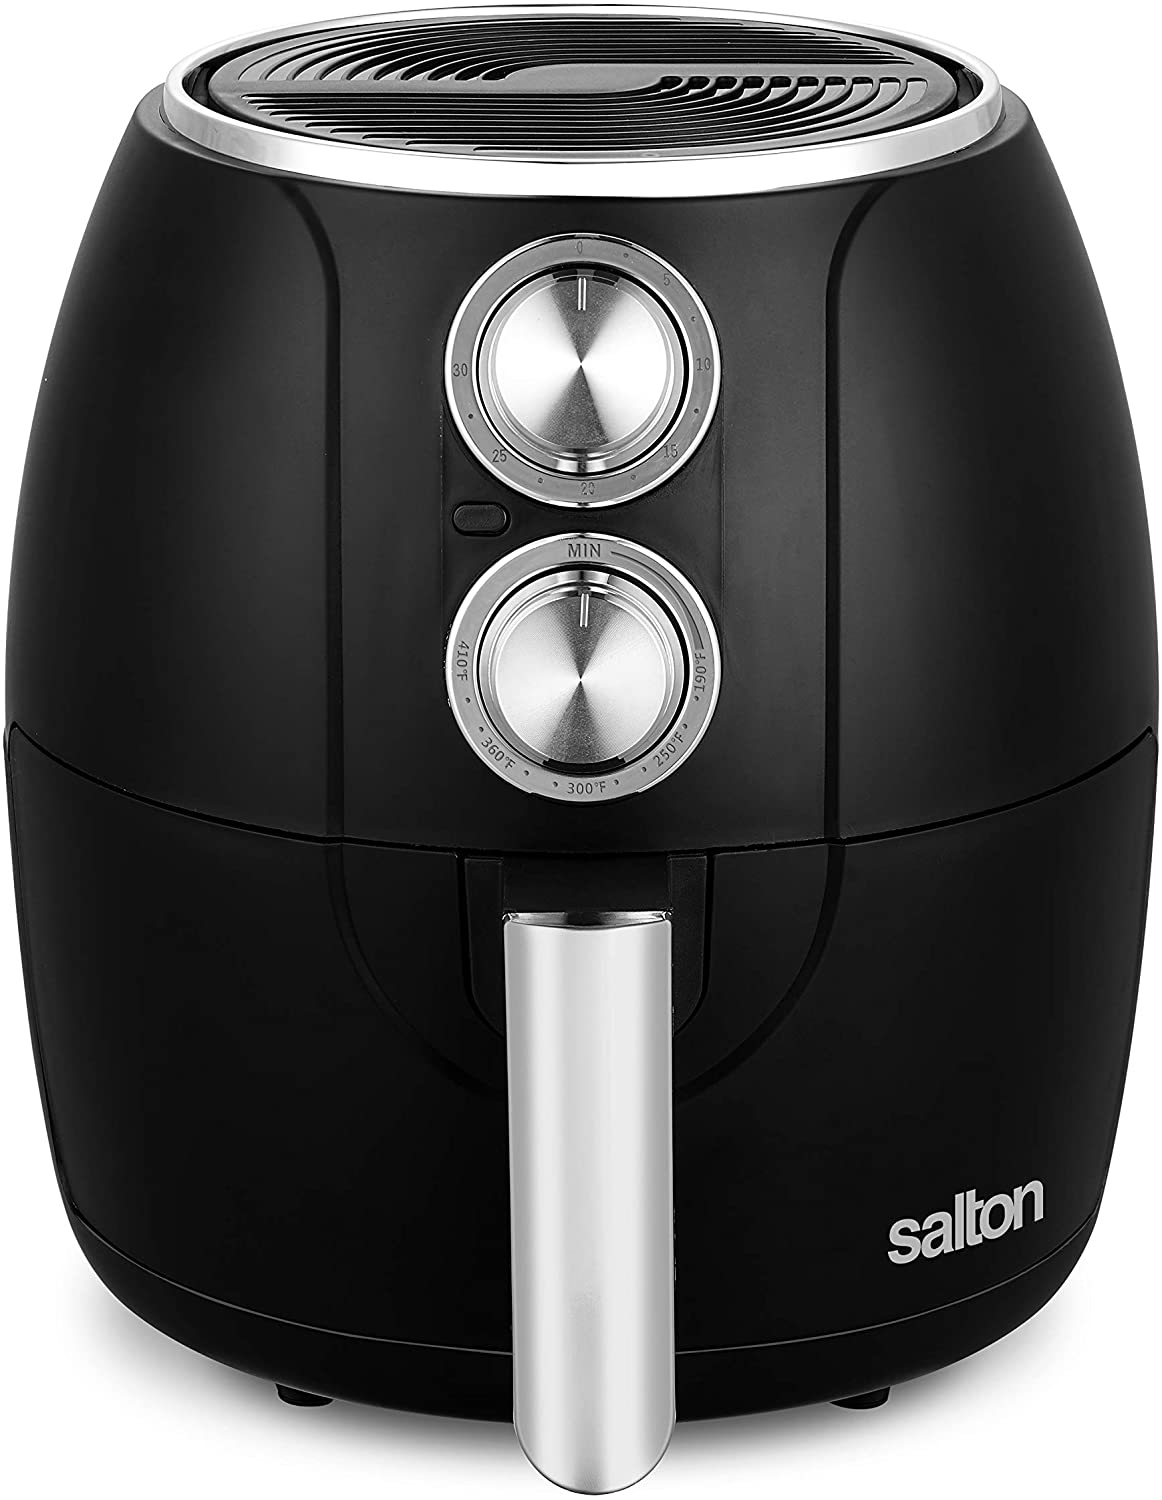 Salton Black Manual Air Fryer 3 L/3.1 Qt 1pc – The Cuisinet